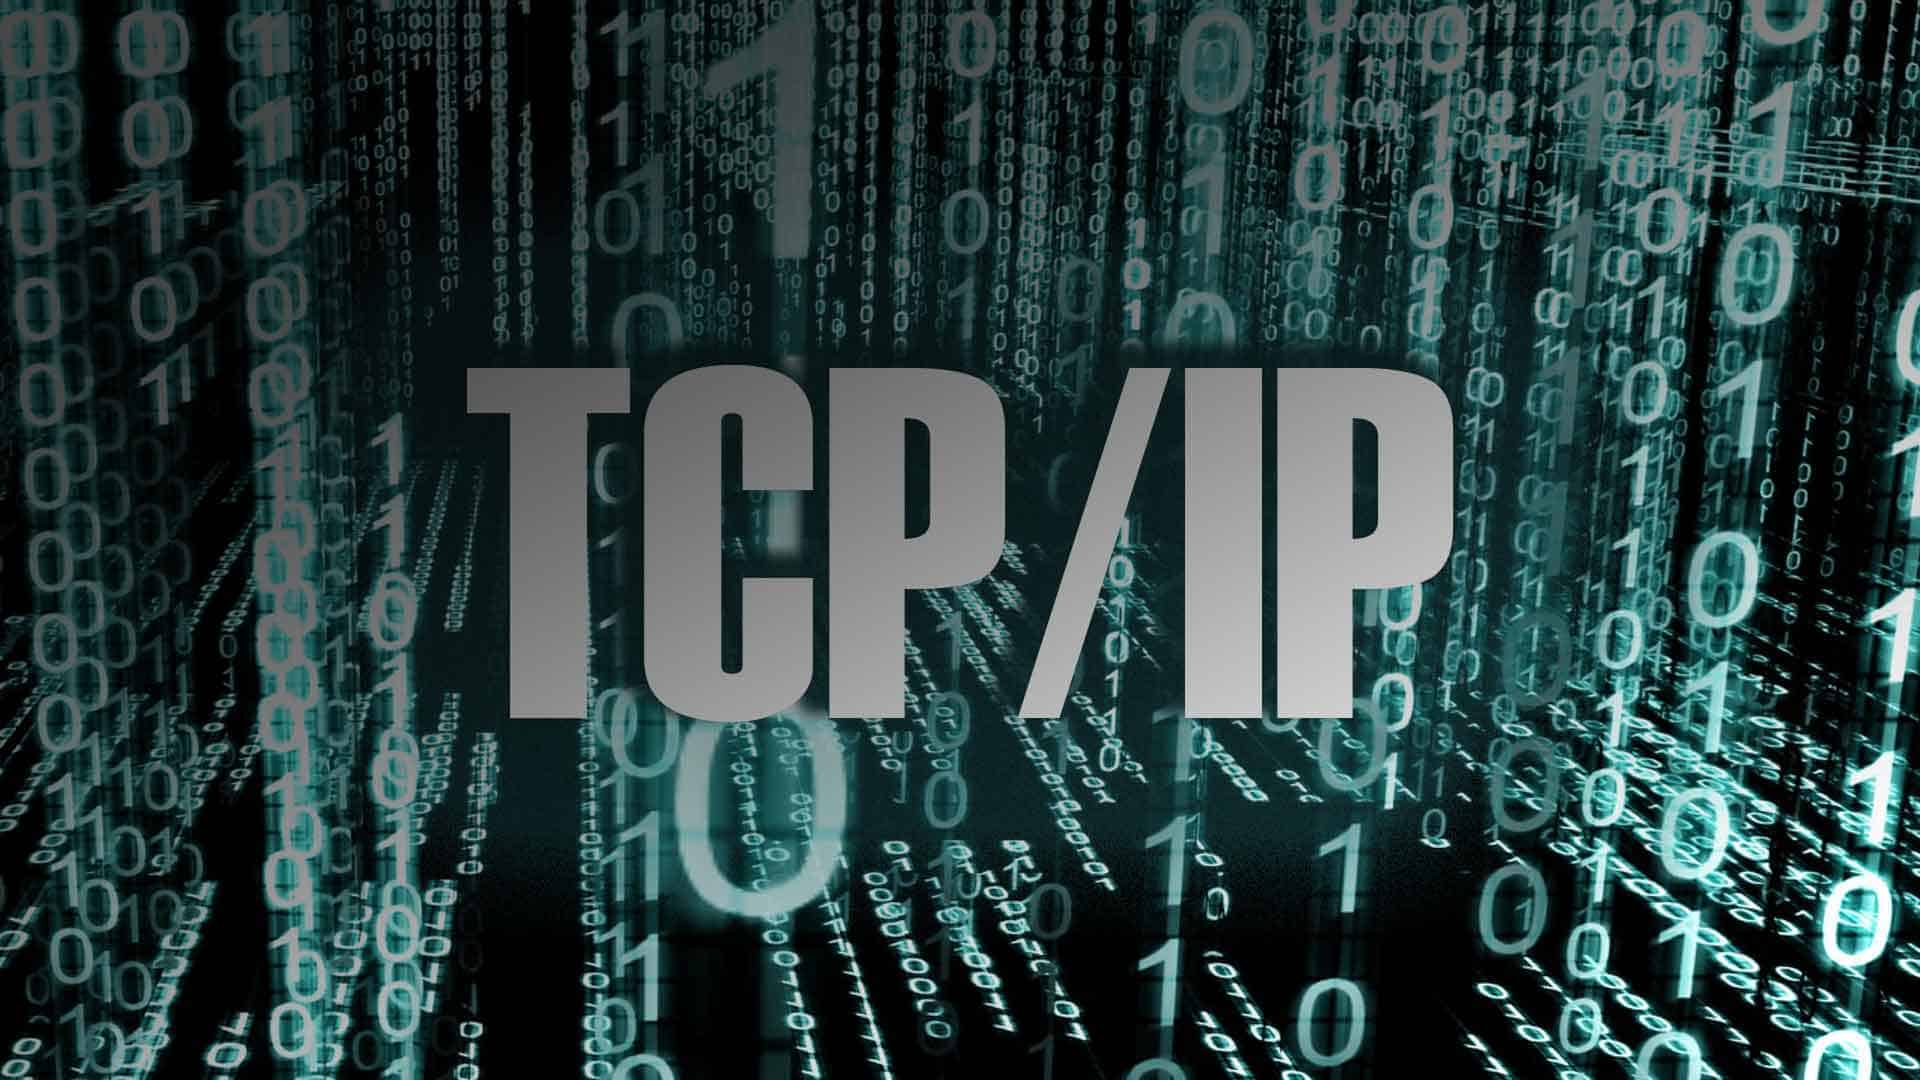 TCP/IP - что это такое